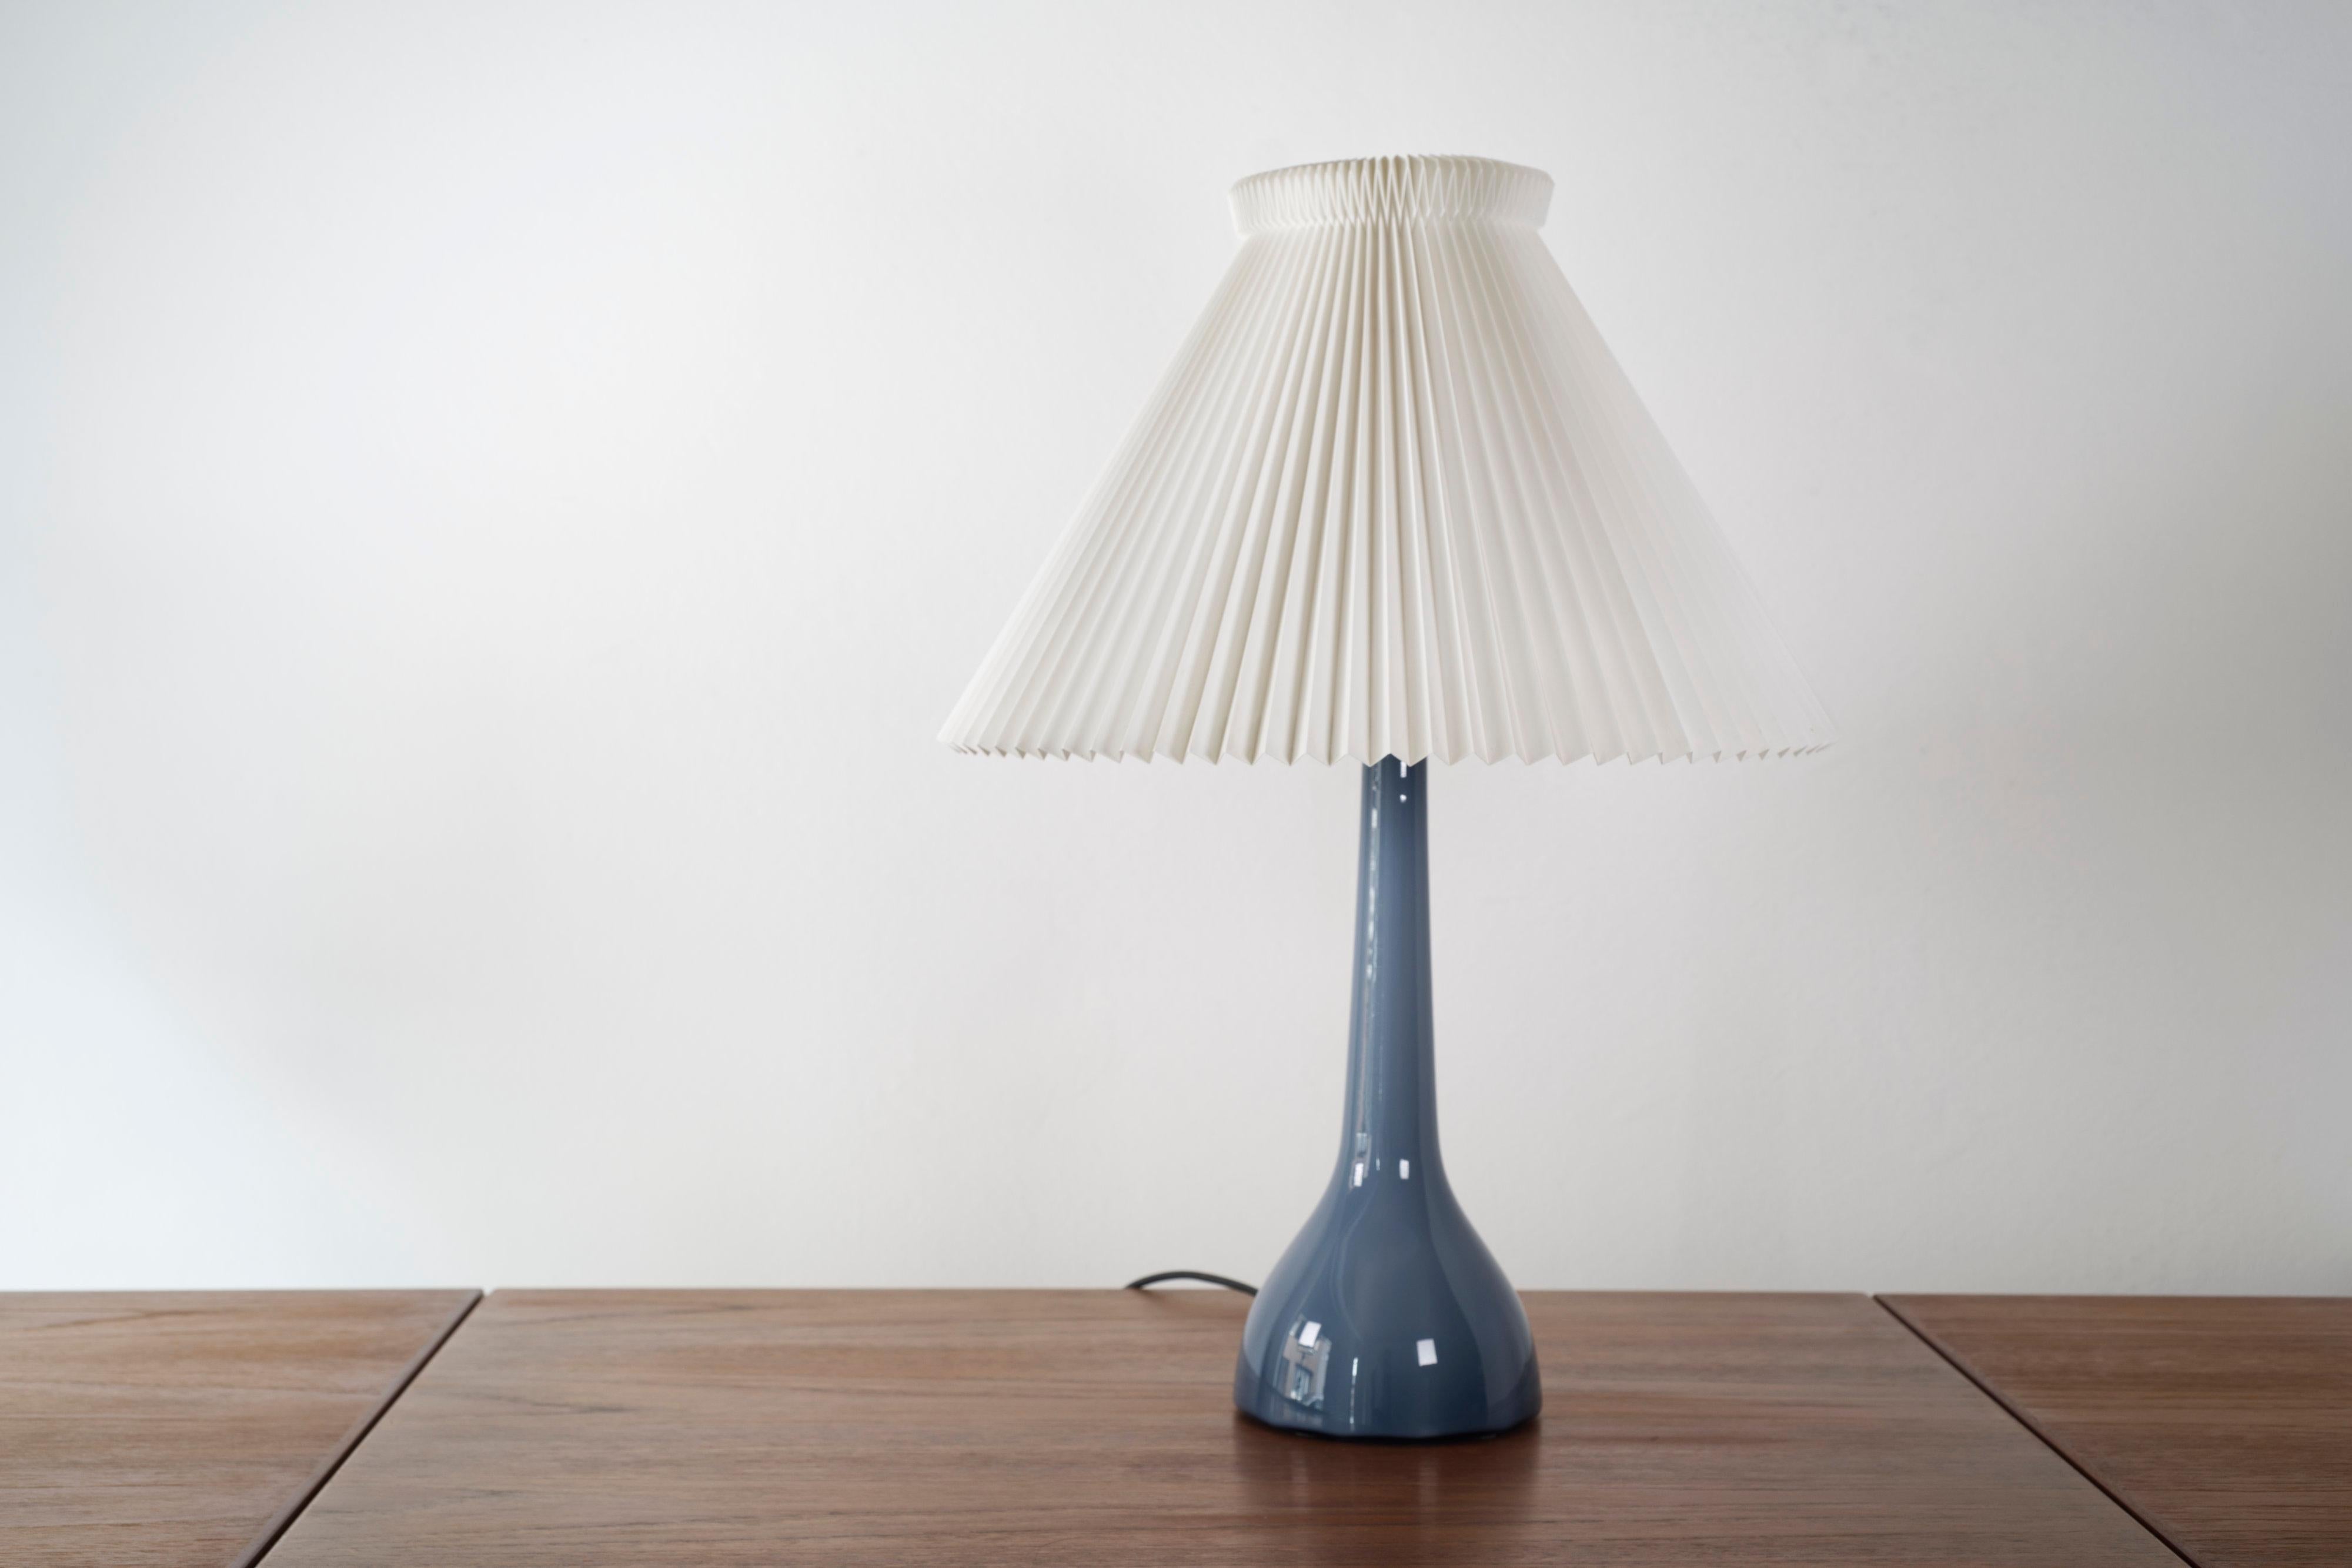 Rare lampe de table bleue danoise du milieu du siècle par Esben Klint pour Karstrup Holmegaard Fyns Glasværk, années 1950.

Magnifique verre de couleur bleue avec un effet de tourbillon de tons plus foncés et plus clairs. Ce modèle et cette forme